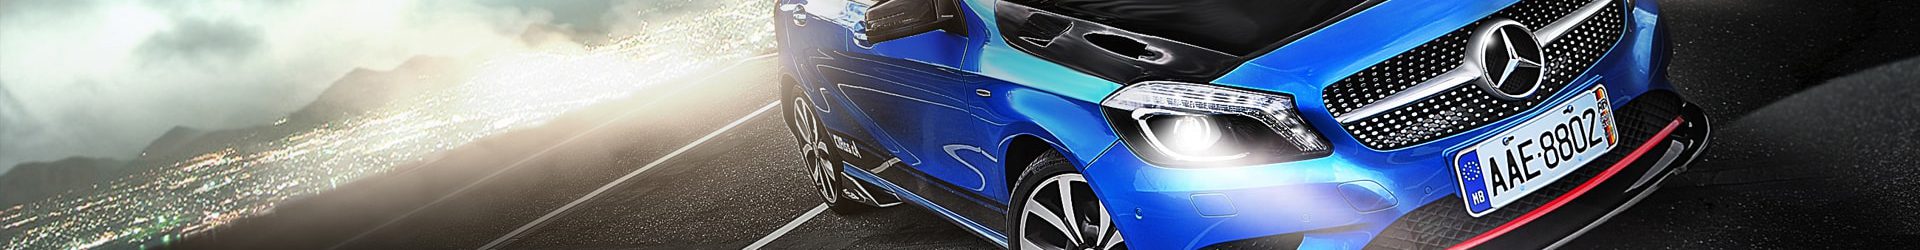 –新2勢力– BMW F22 M235i 超級新秀 開箱拍攝